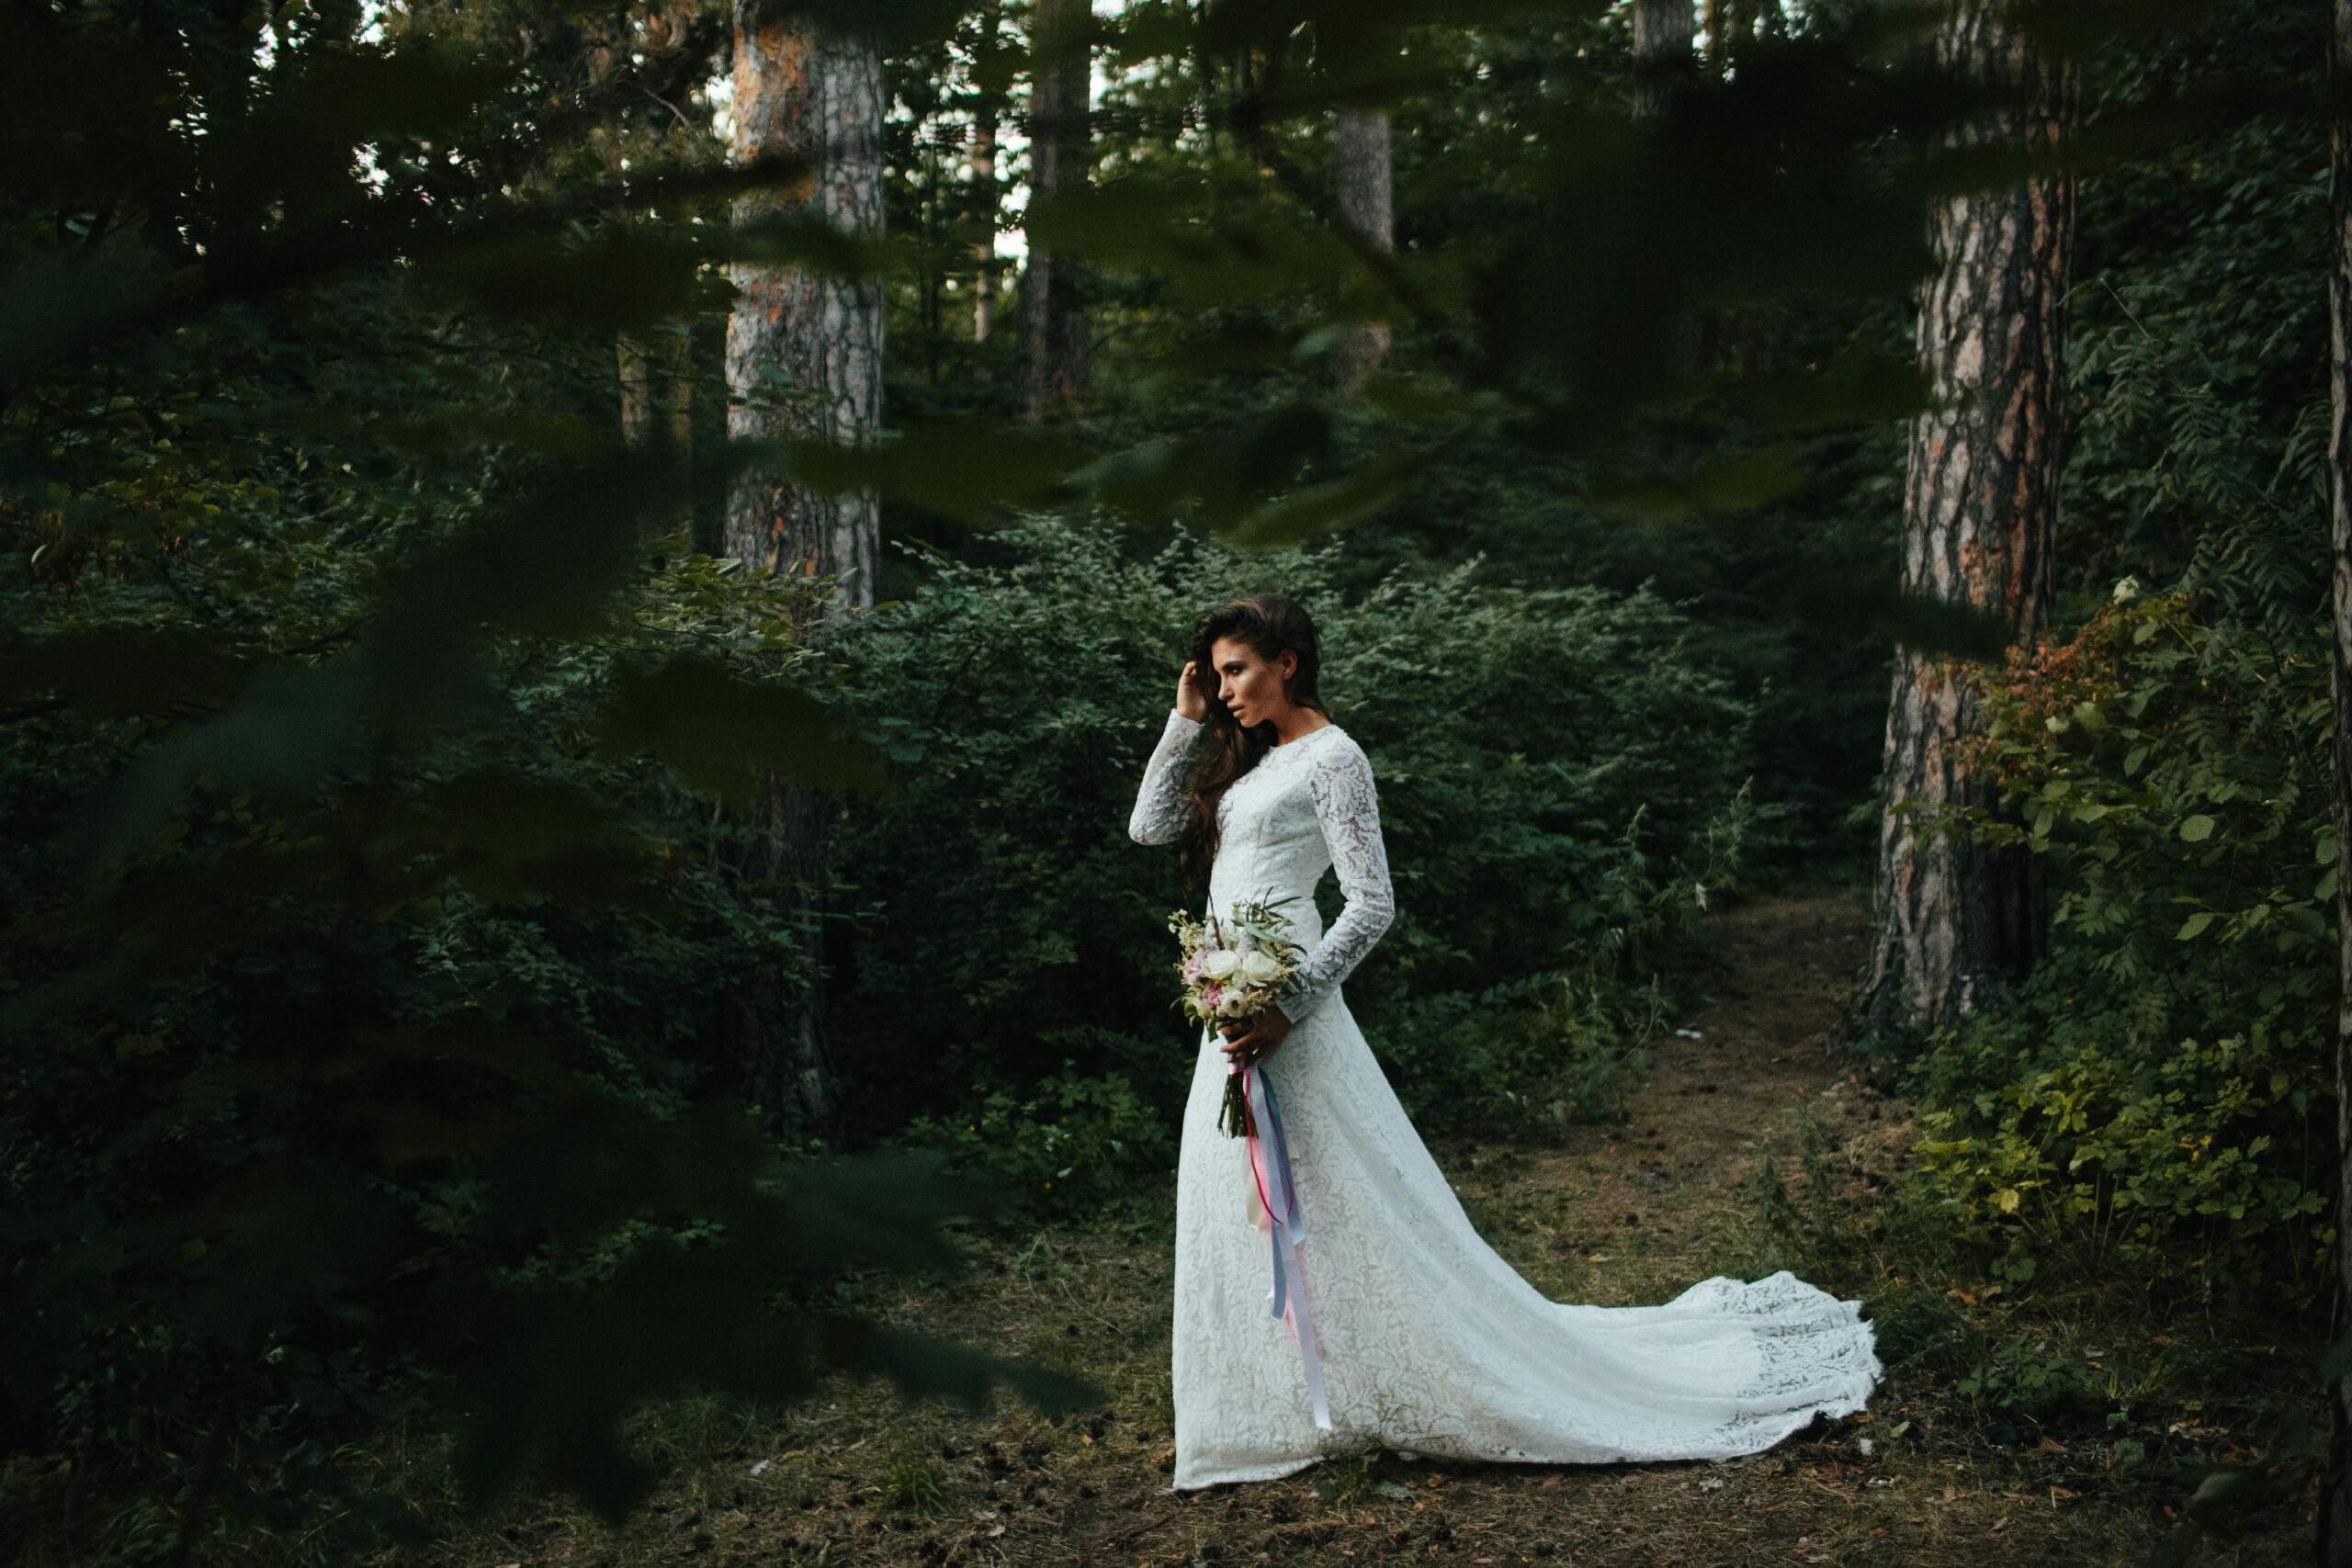 Bridebook.co.uk Boho bride at woodland wedding with long sleeved lace wedding dress